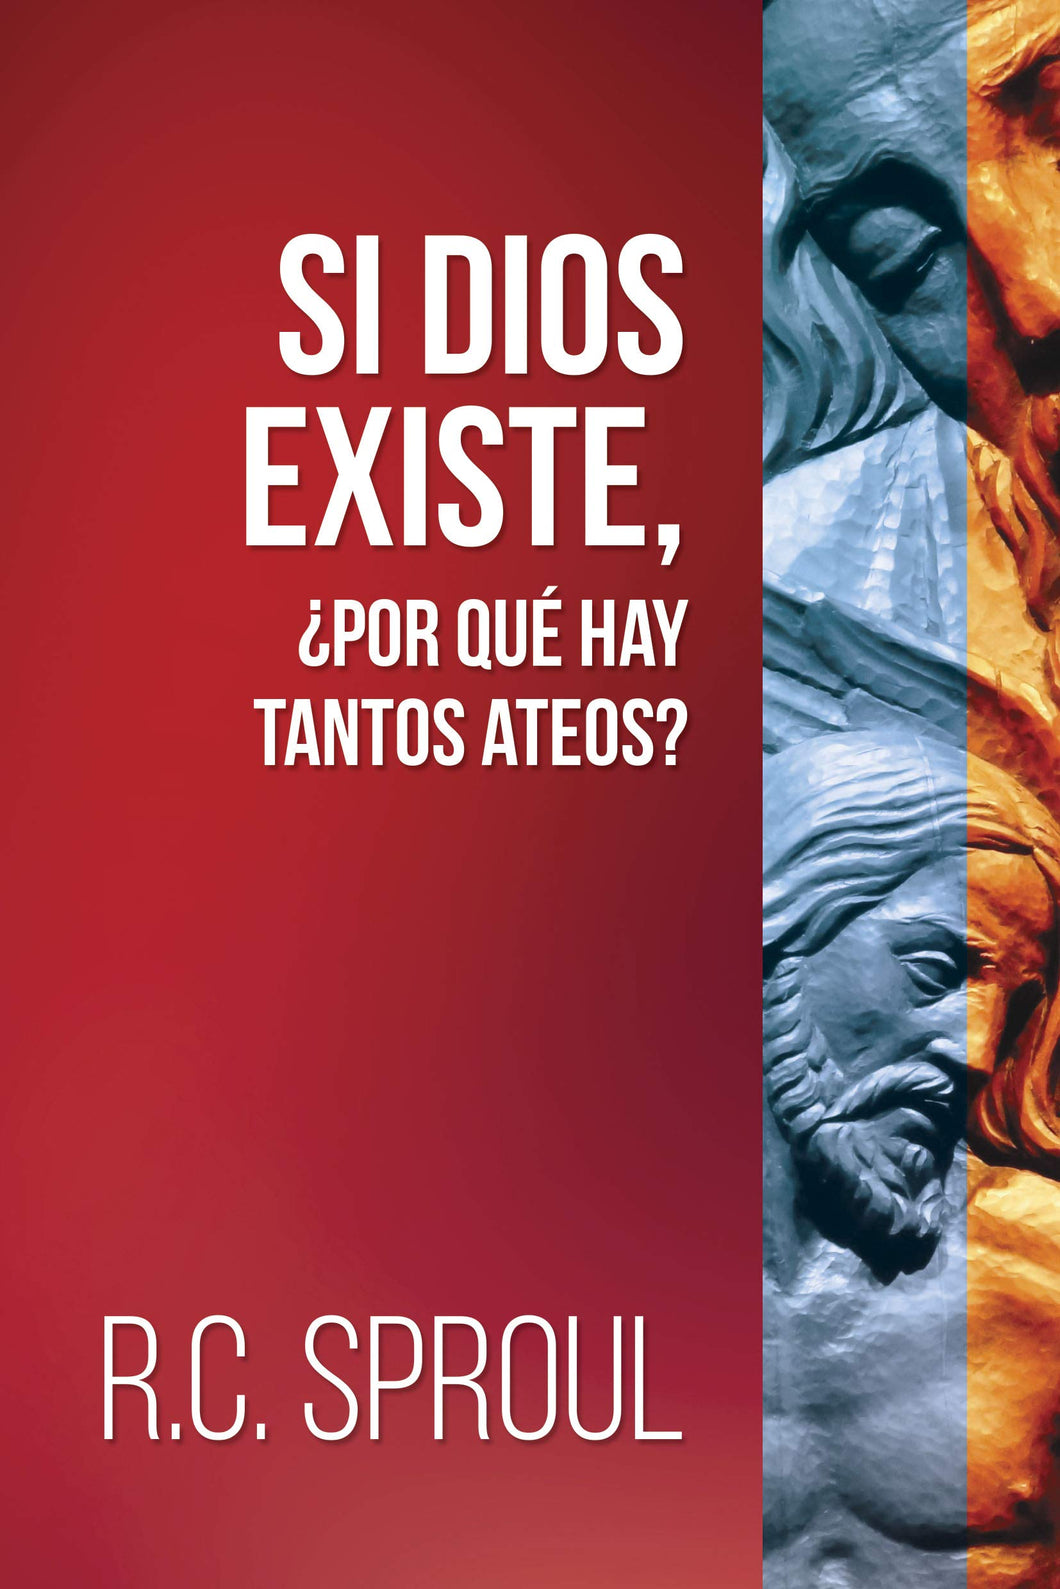 Si Dios existe, ¿por que hay tantos ateos? - R. C. Rproul by Mundo Hispano